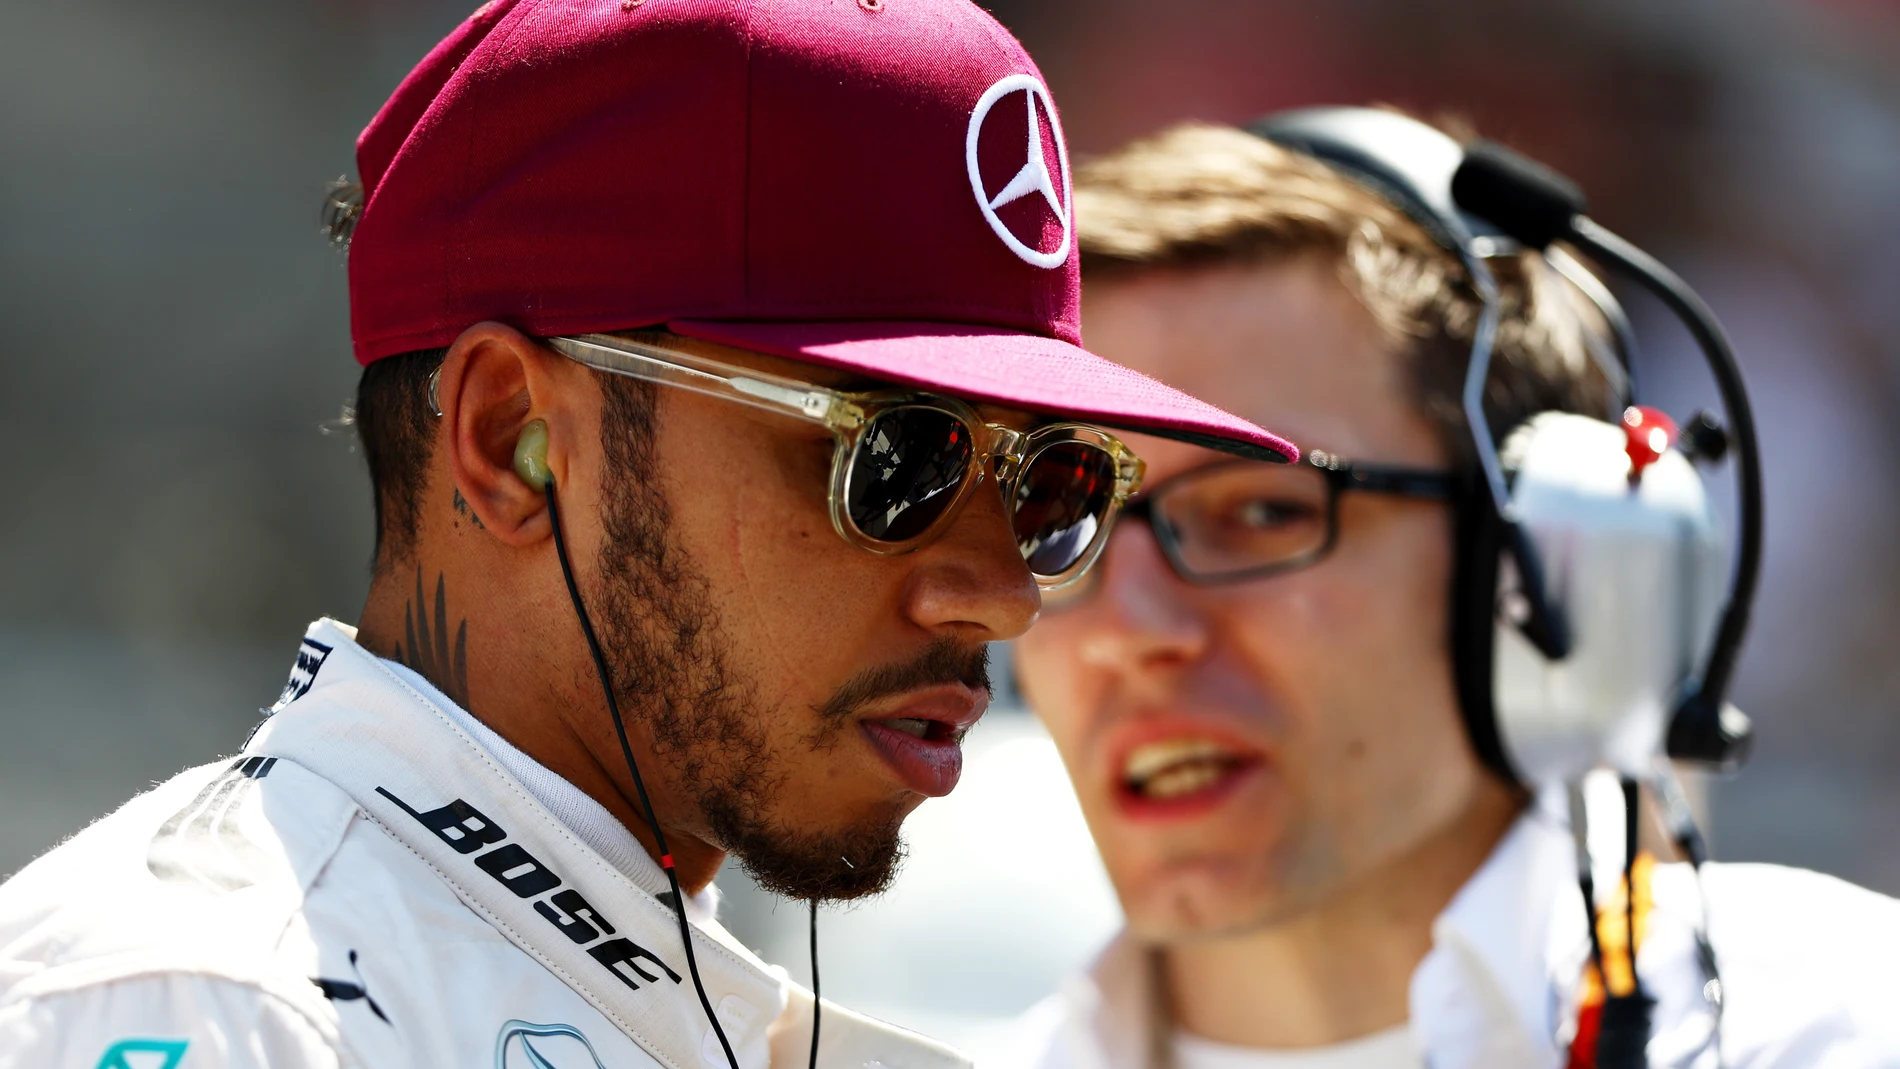 Lewis Hamilton, serio y cabizbajo en el GP de España